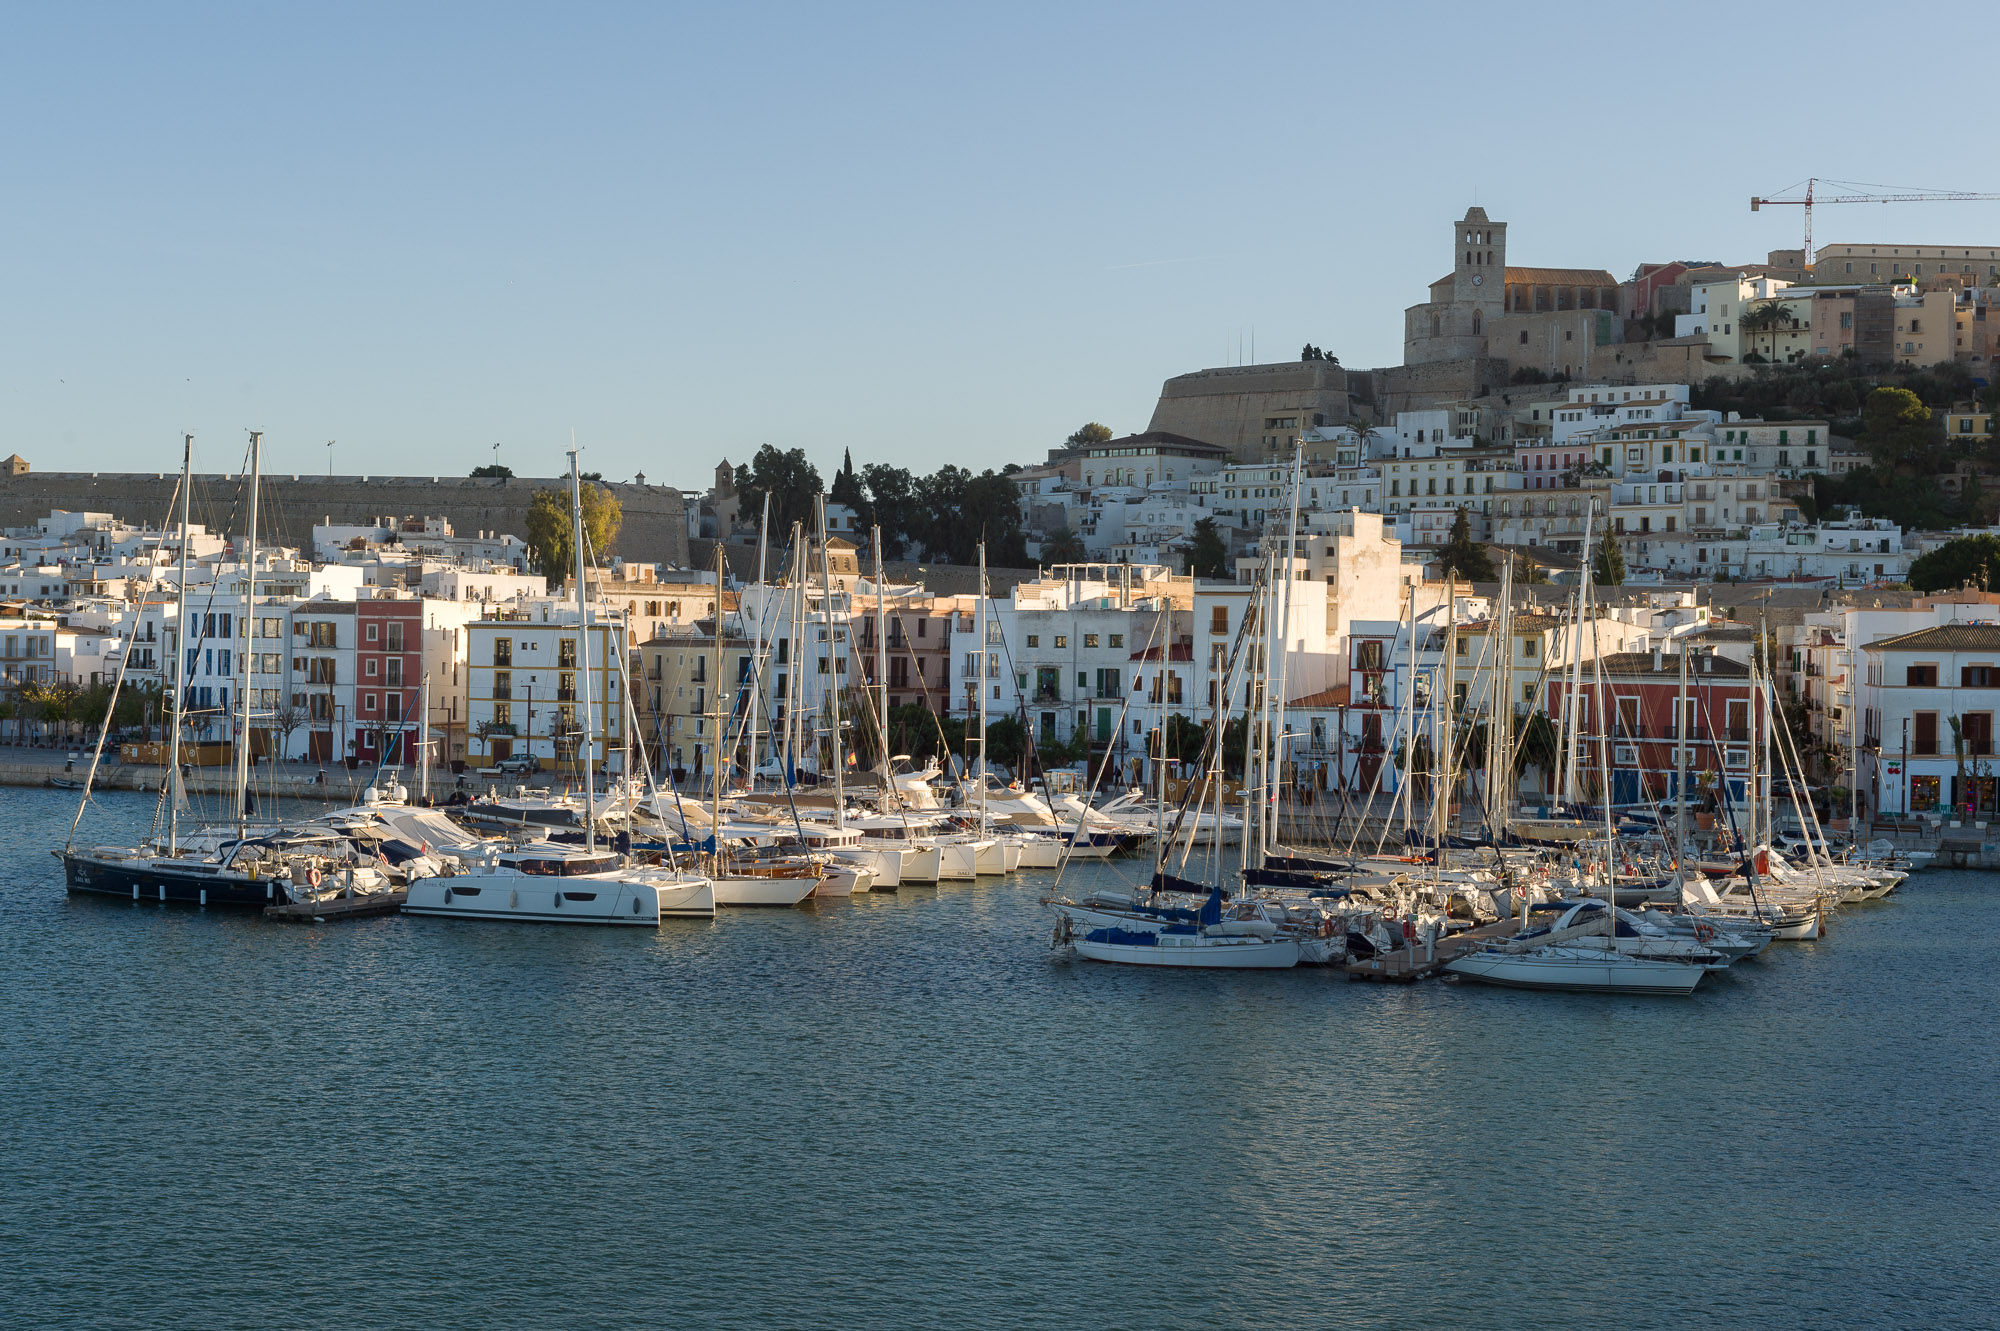 Die APB führt eine öffentliche Ausschreibung für die Verwaltung von Liegeplätzen im Dock von Poniente des Hafens von Eivissa durch